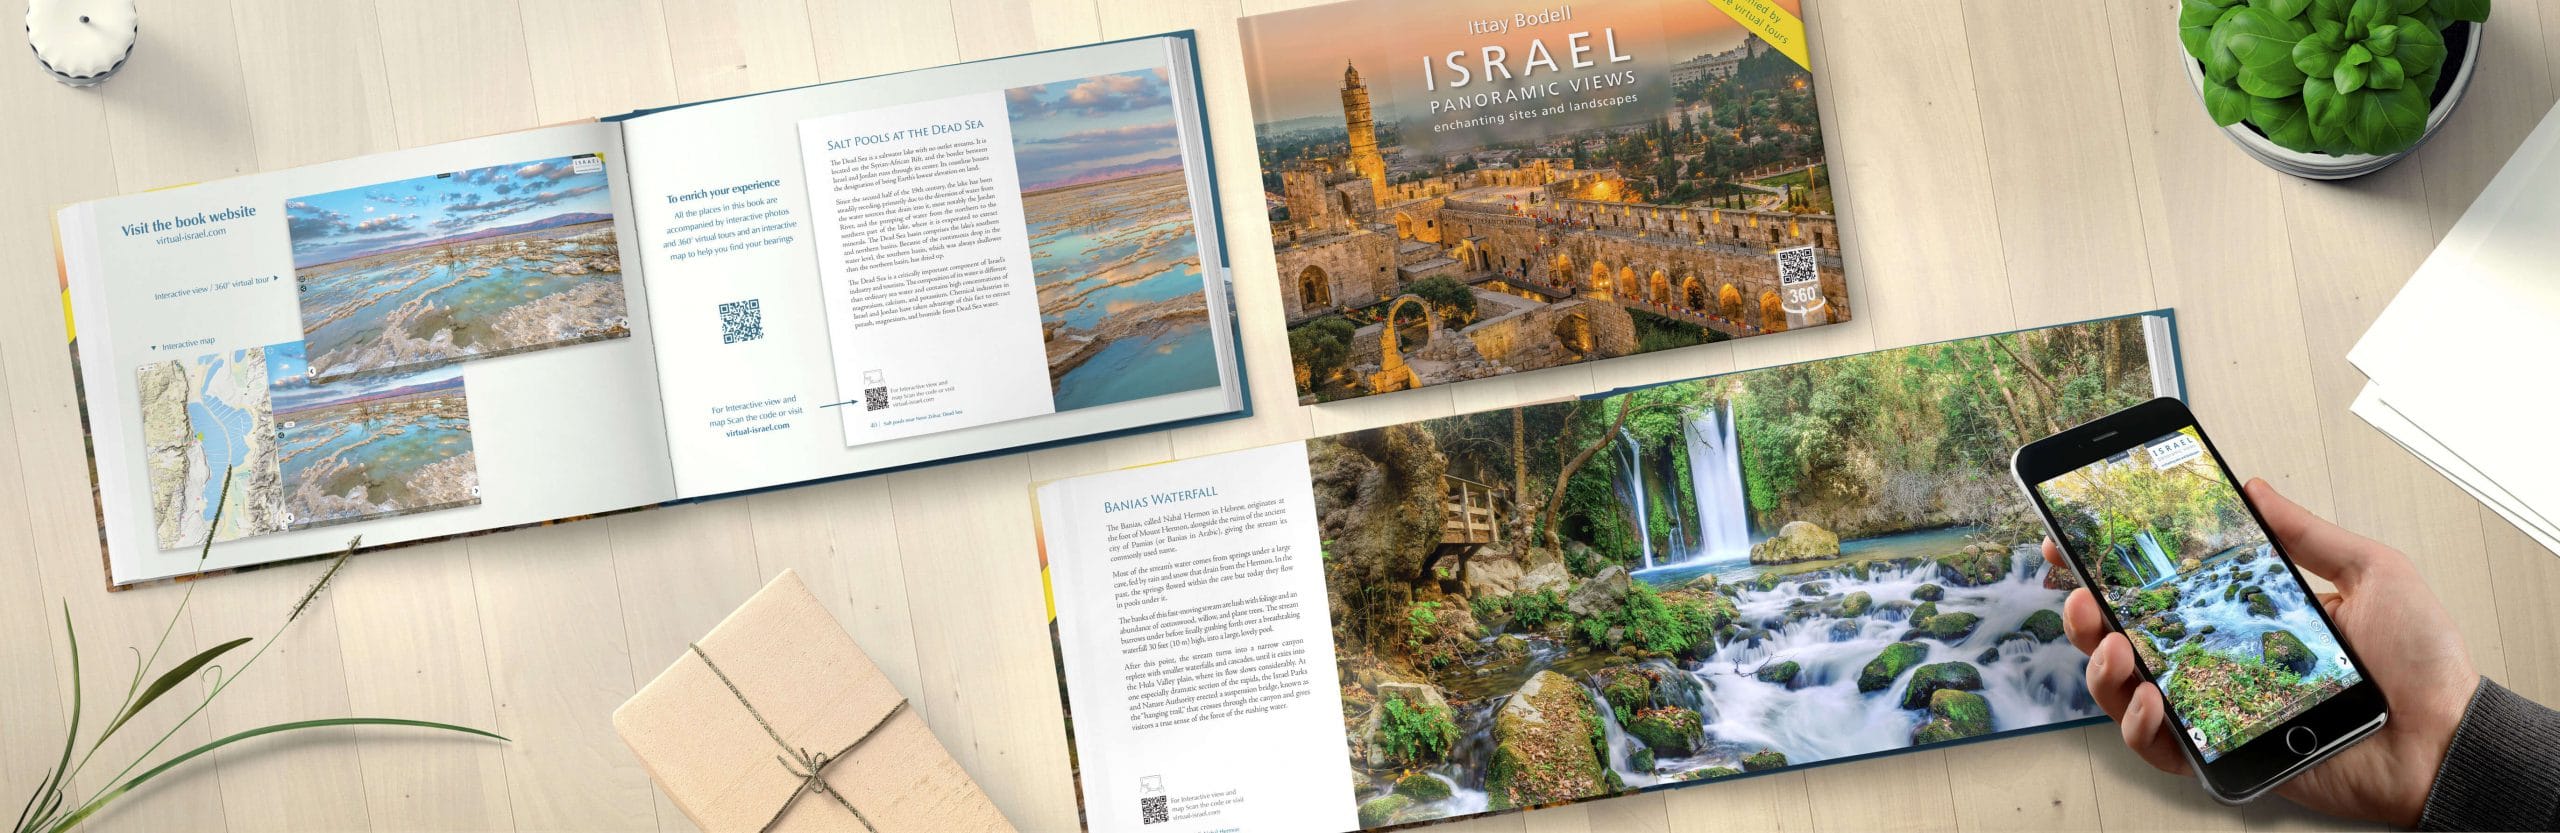 israel books ישראל במבט פנורמי - ספר צילום אינטראקטיבי באנגלית